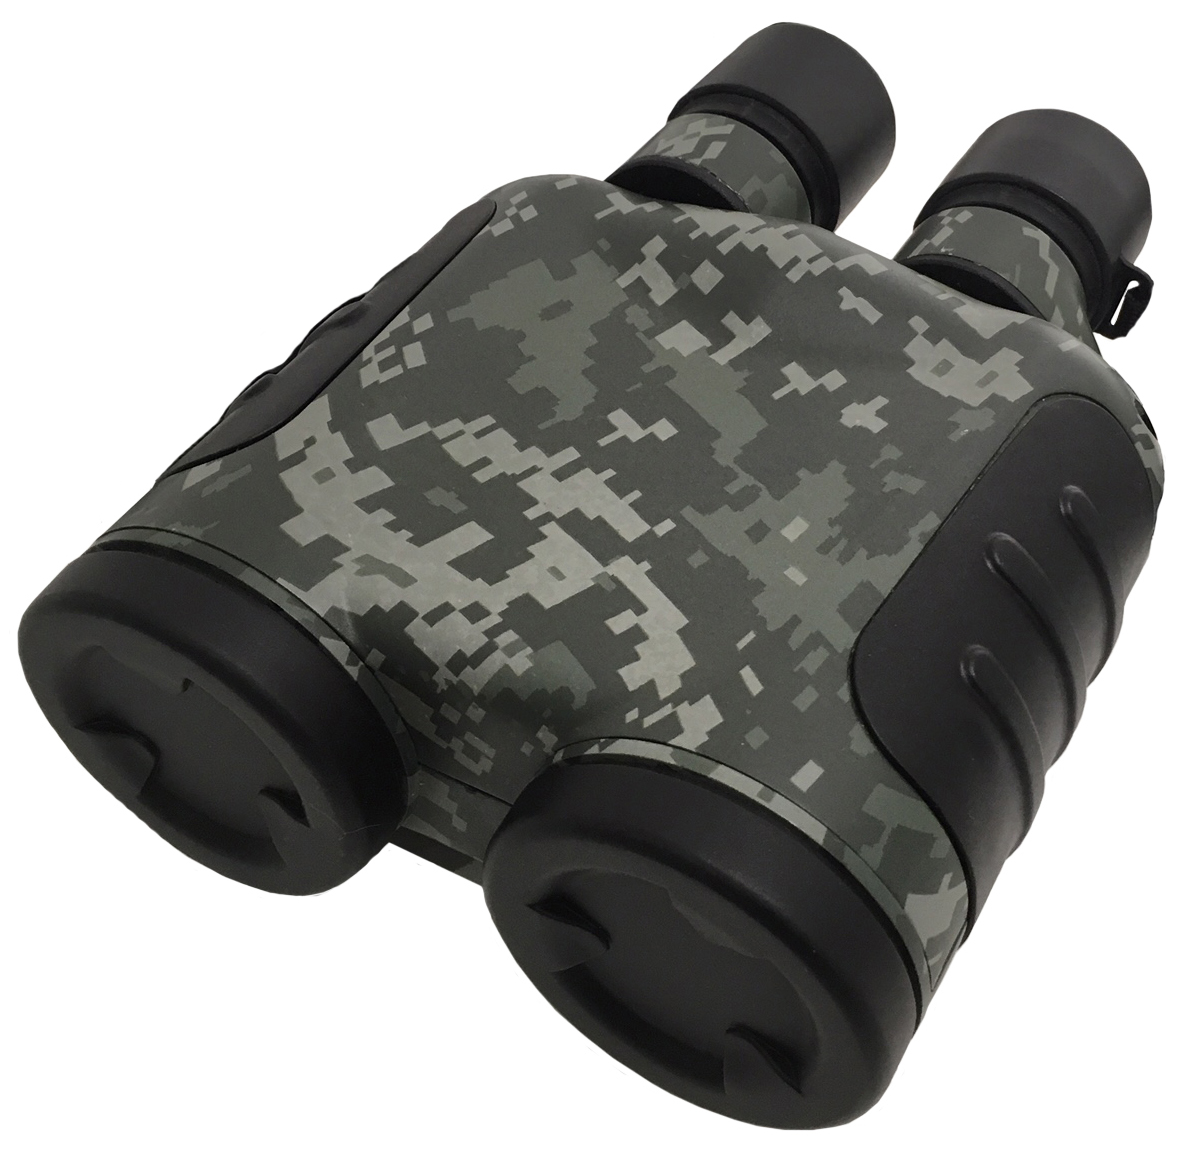 Binoculars with image stabilization BSM 20x50 (modernized)